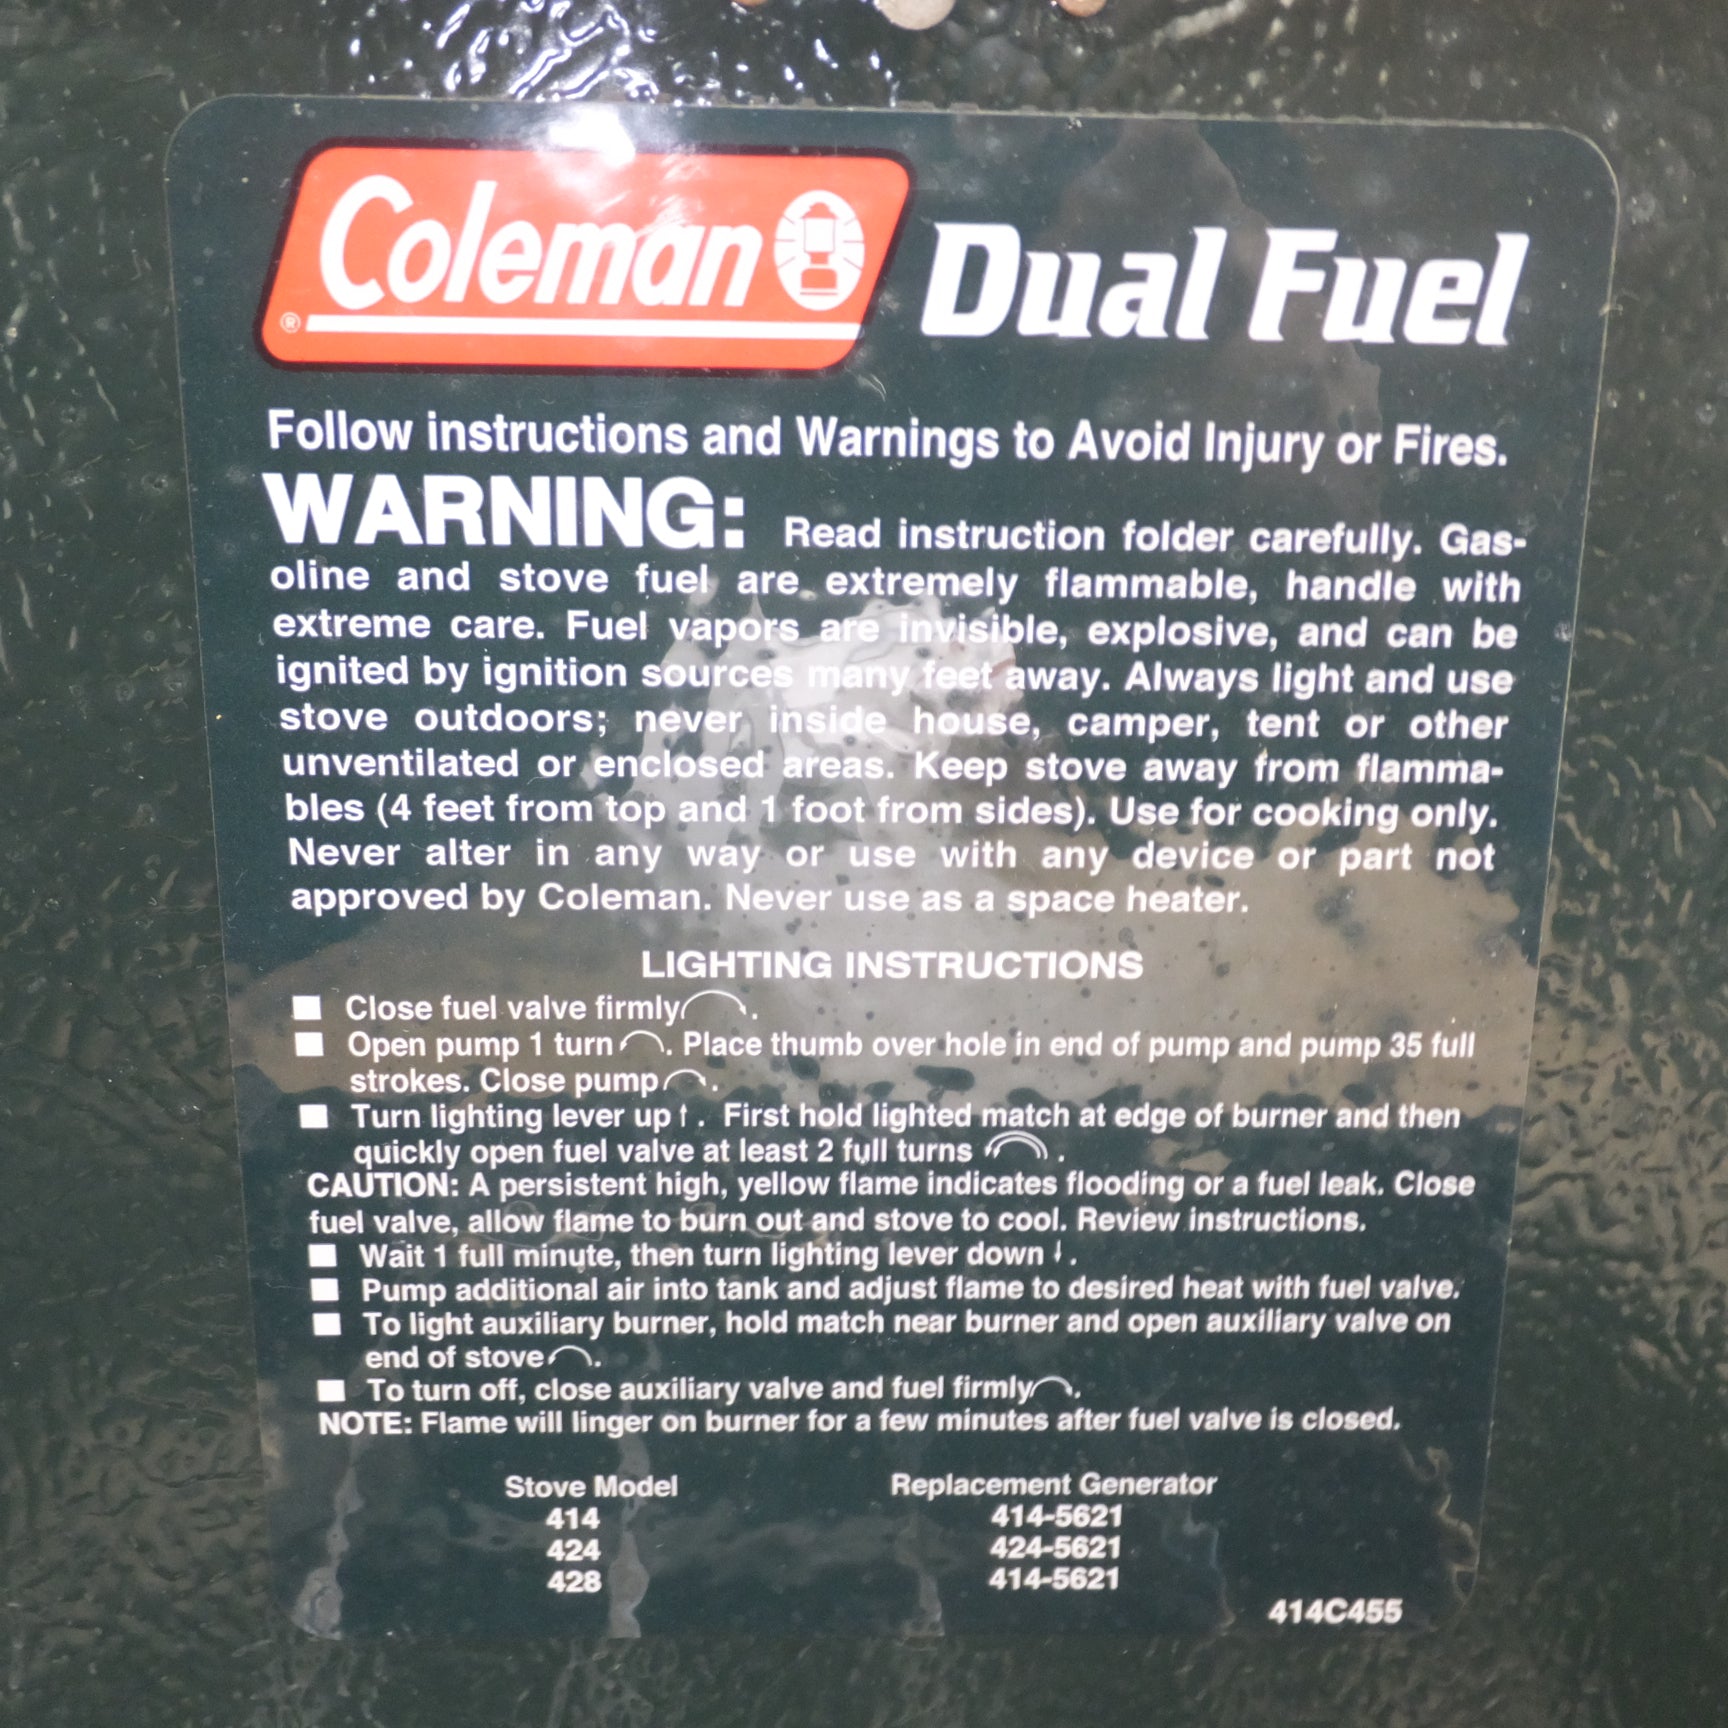 [送料無料]★コールマン Coleman ツーバーナーコンロ Dual Fuel 414C455★